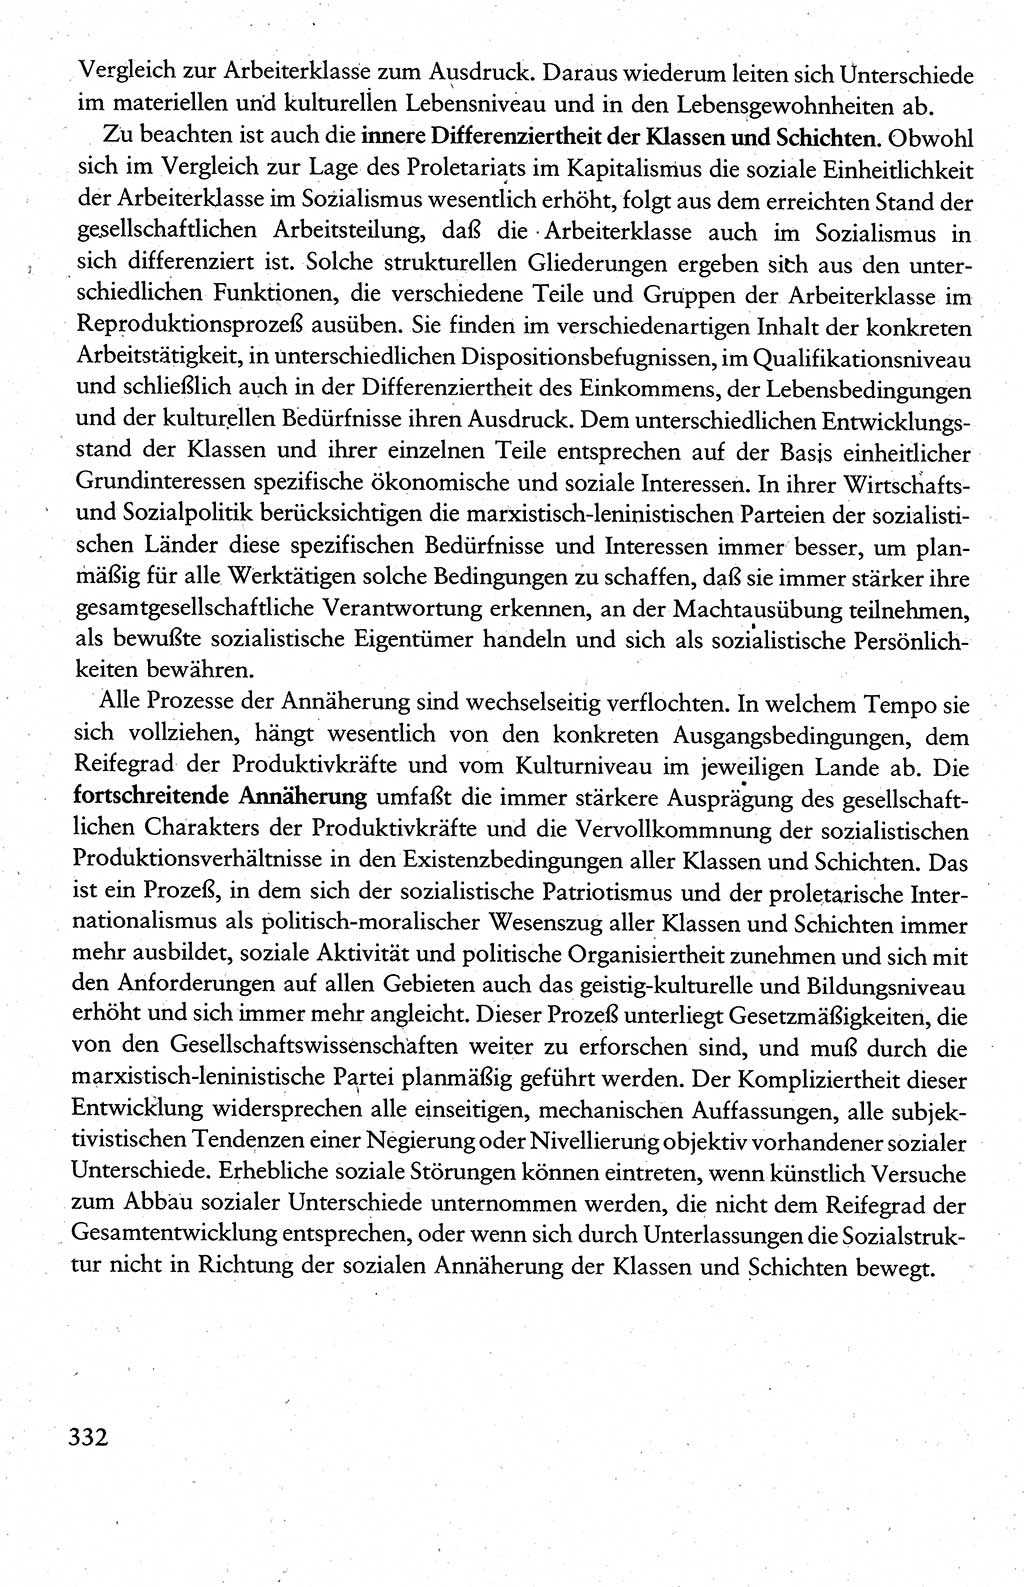 Wissenschaftlicher Kommunismus [Deutsche Demokratische Republik (DDR)], Lehrbuch für das marxistisch-leninistische Grundlagenstudium 1983, Seite 332 (Wiss. Komm. DDR Lb. 1983, S. 332)